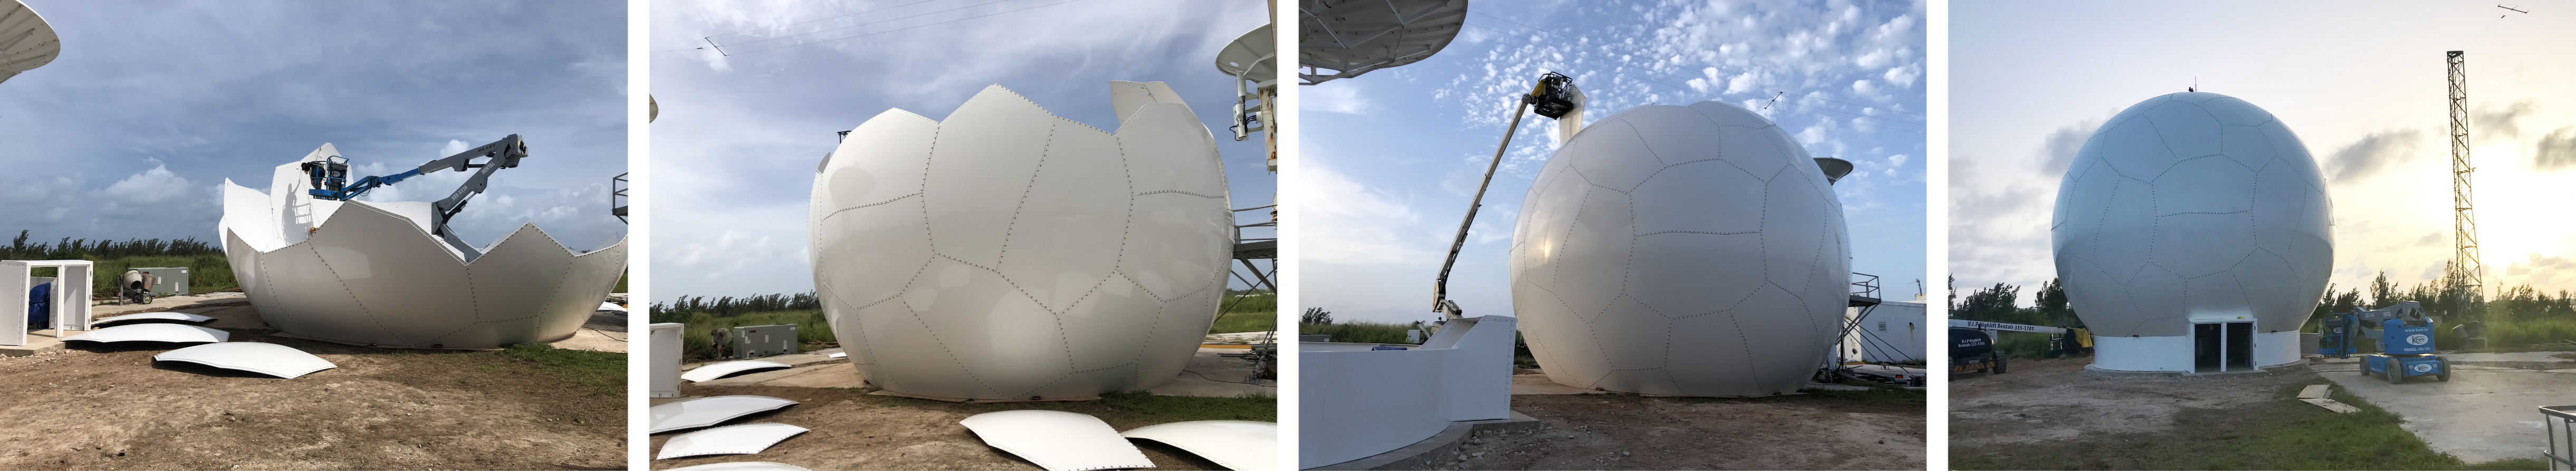 35ft Composite Radome Installation in Bermuda 2018